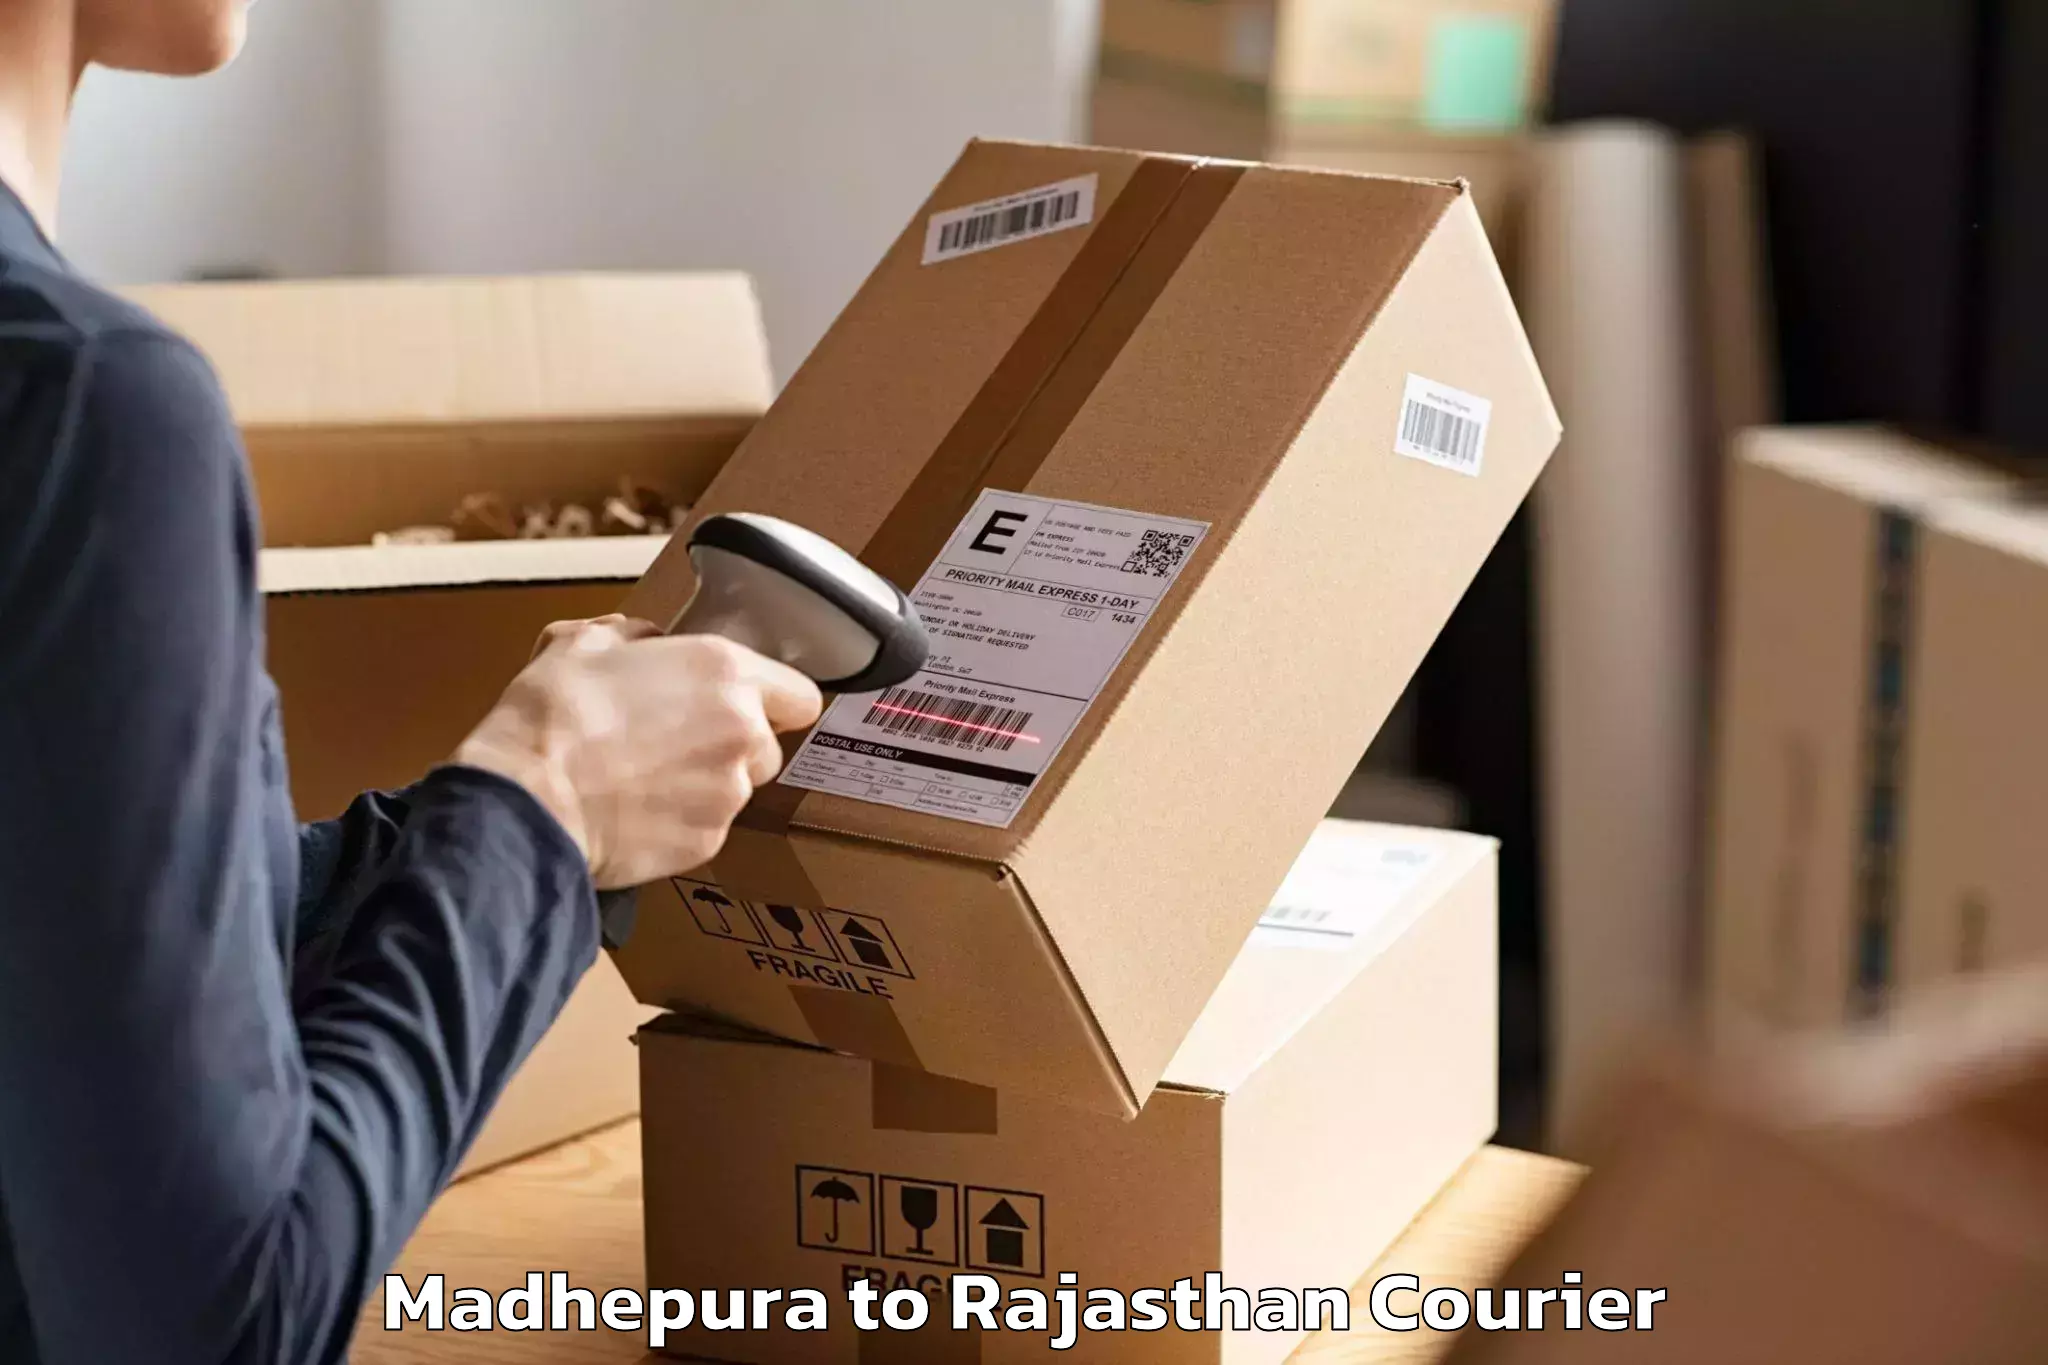 Moving and storage services Madhepura to Ratangarh Churu